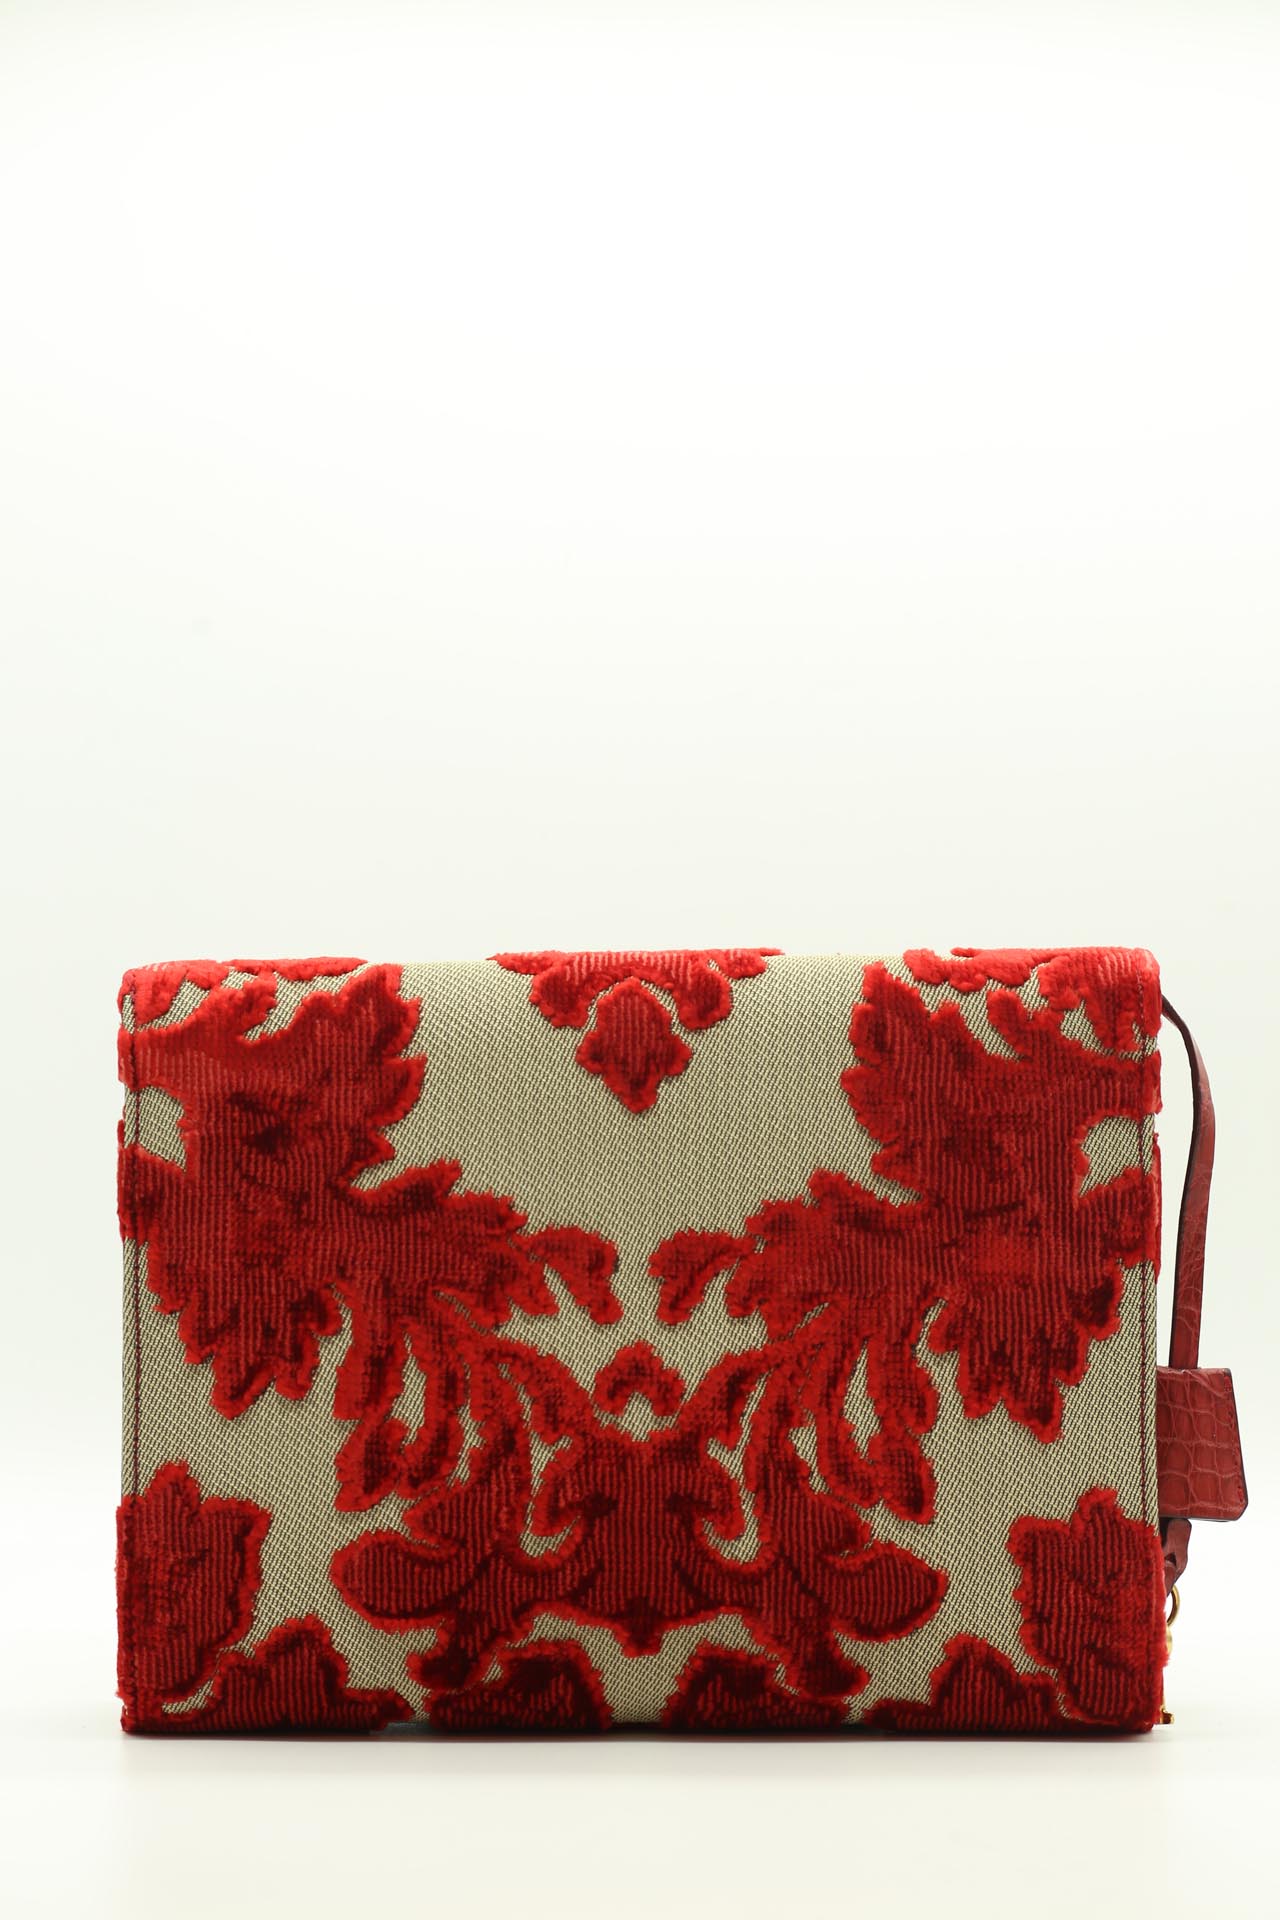 Dolce & Gabbana, Handbag